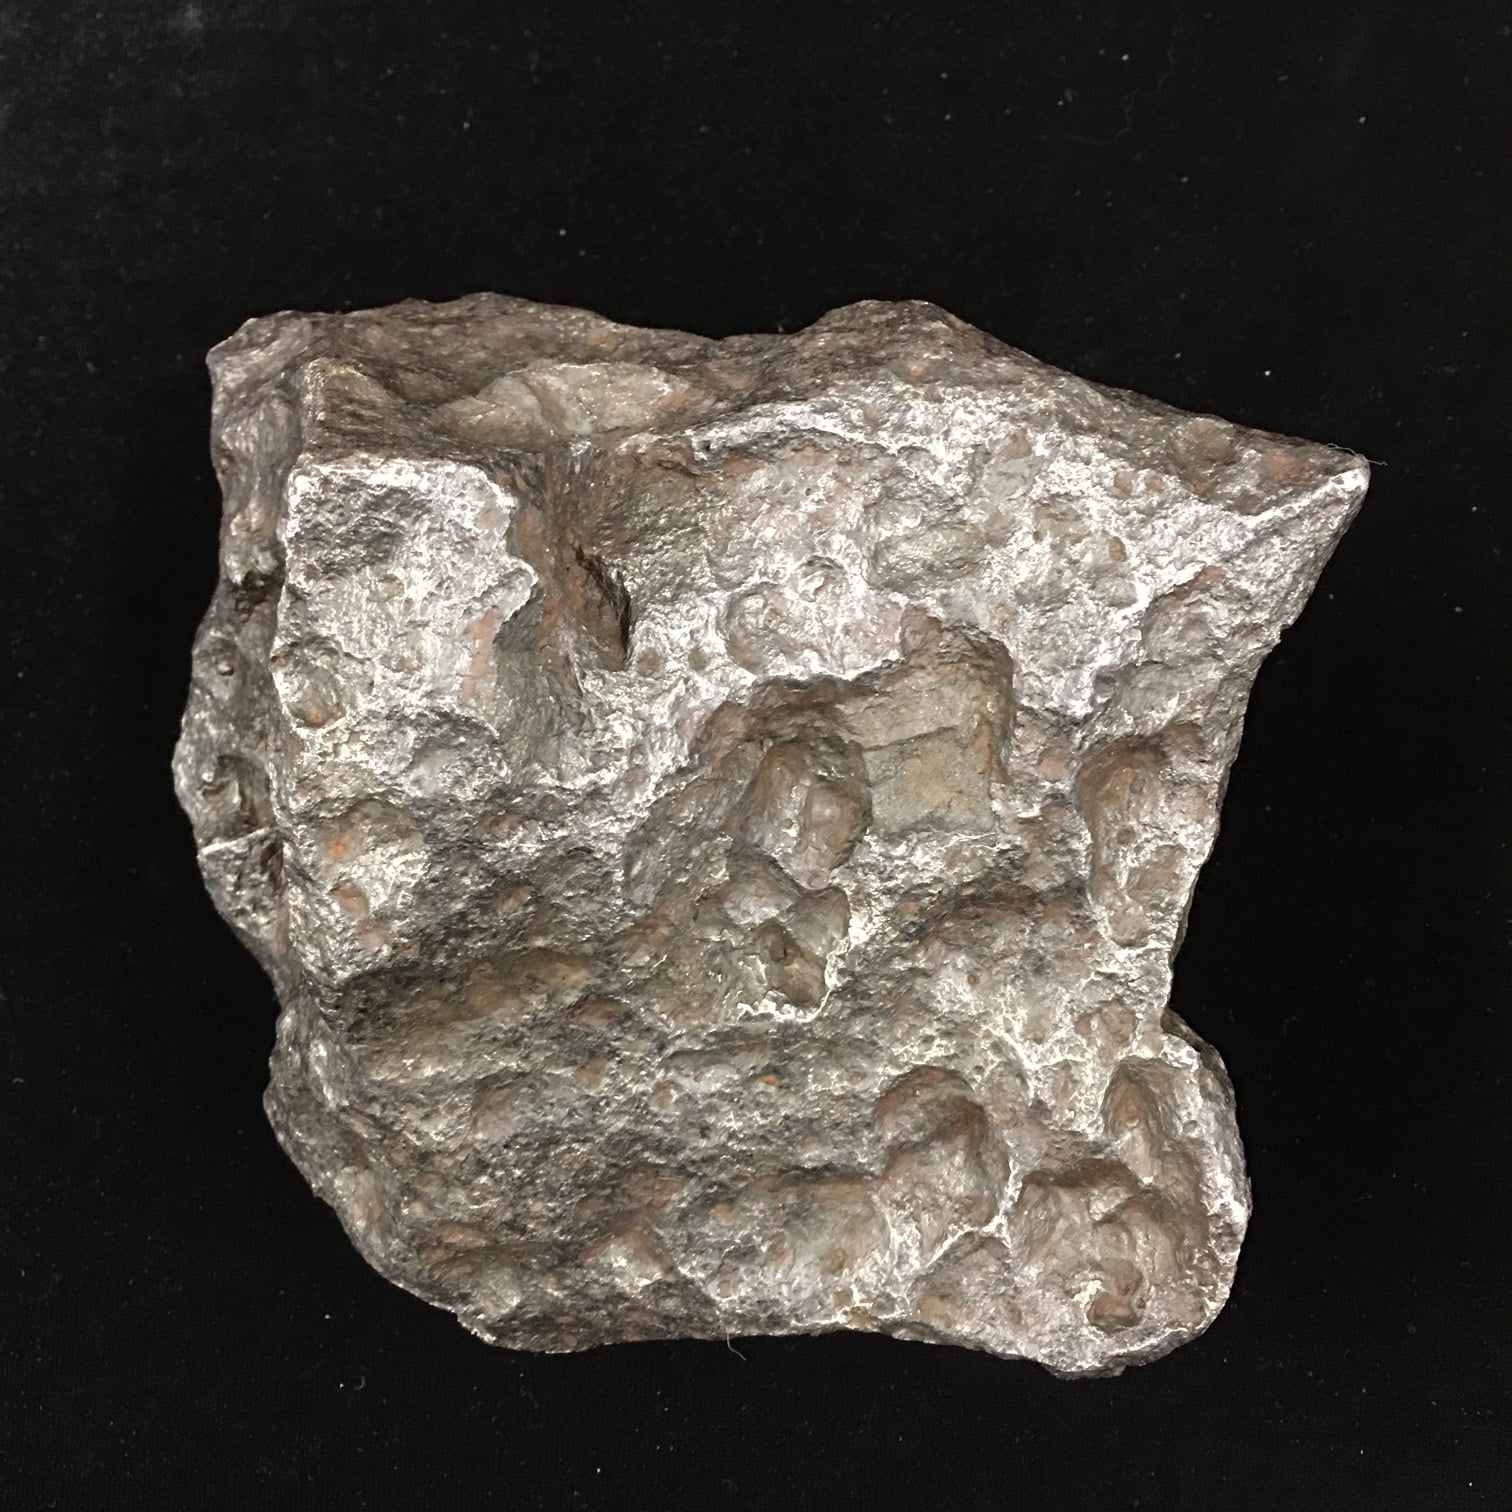 Huge Campo Del Cielo Iron Meteorite 7.166 KG OR 15.79 LBS